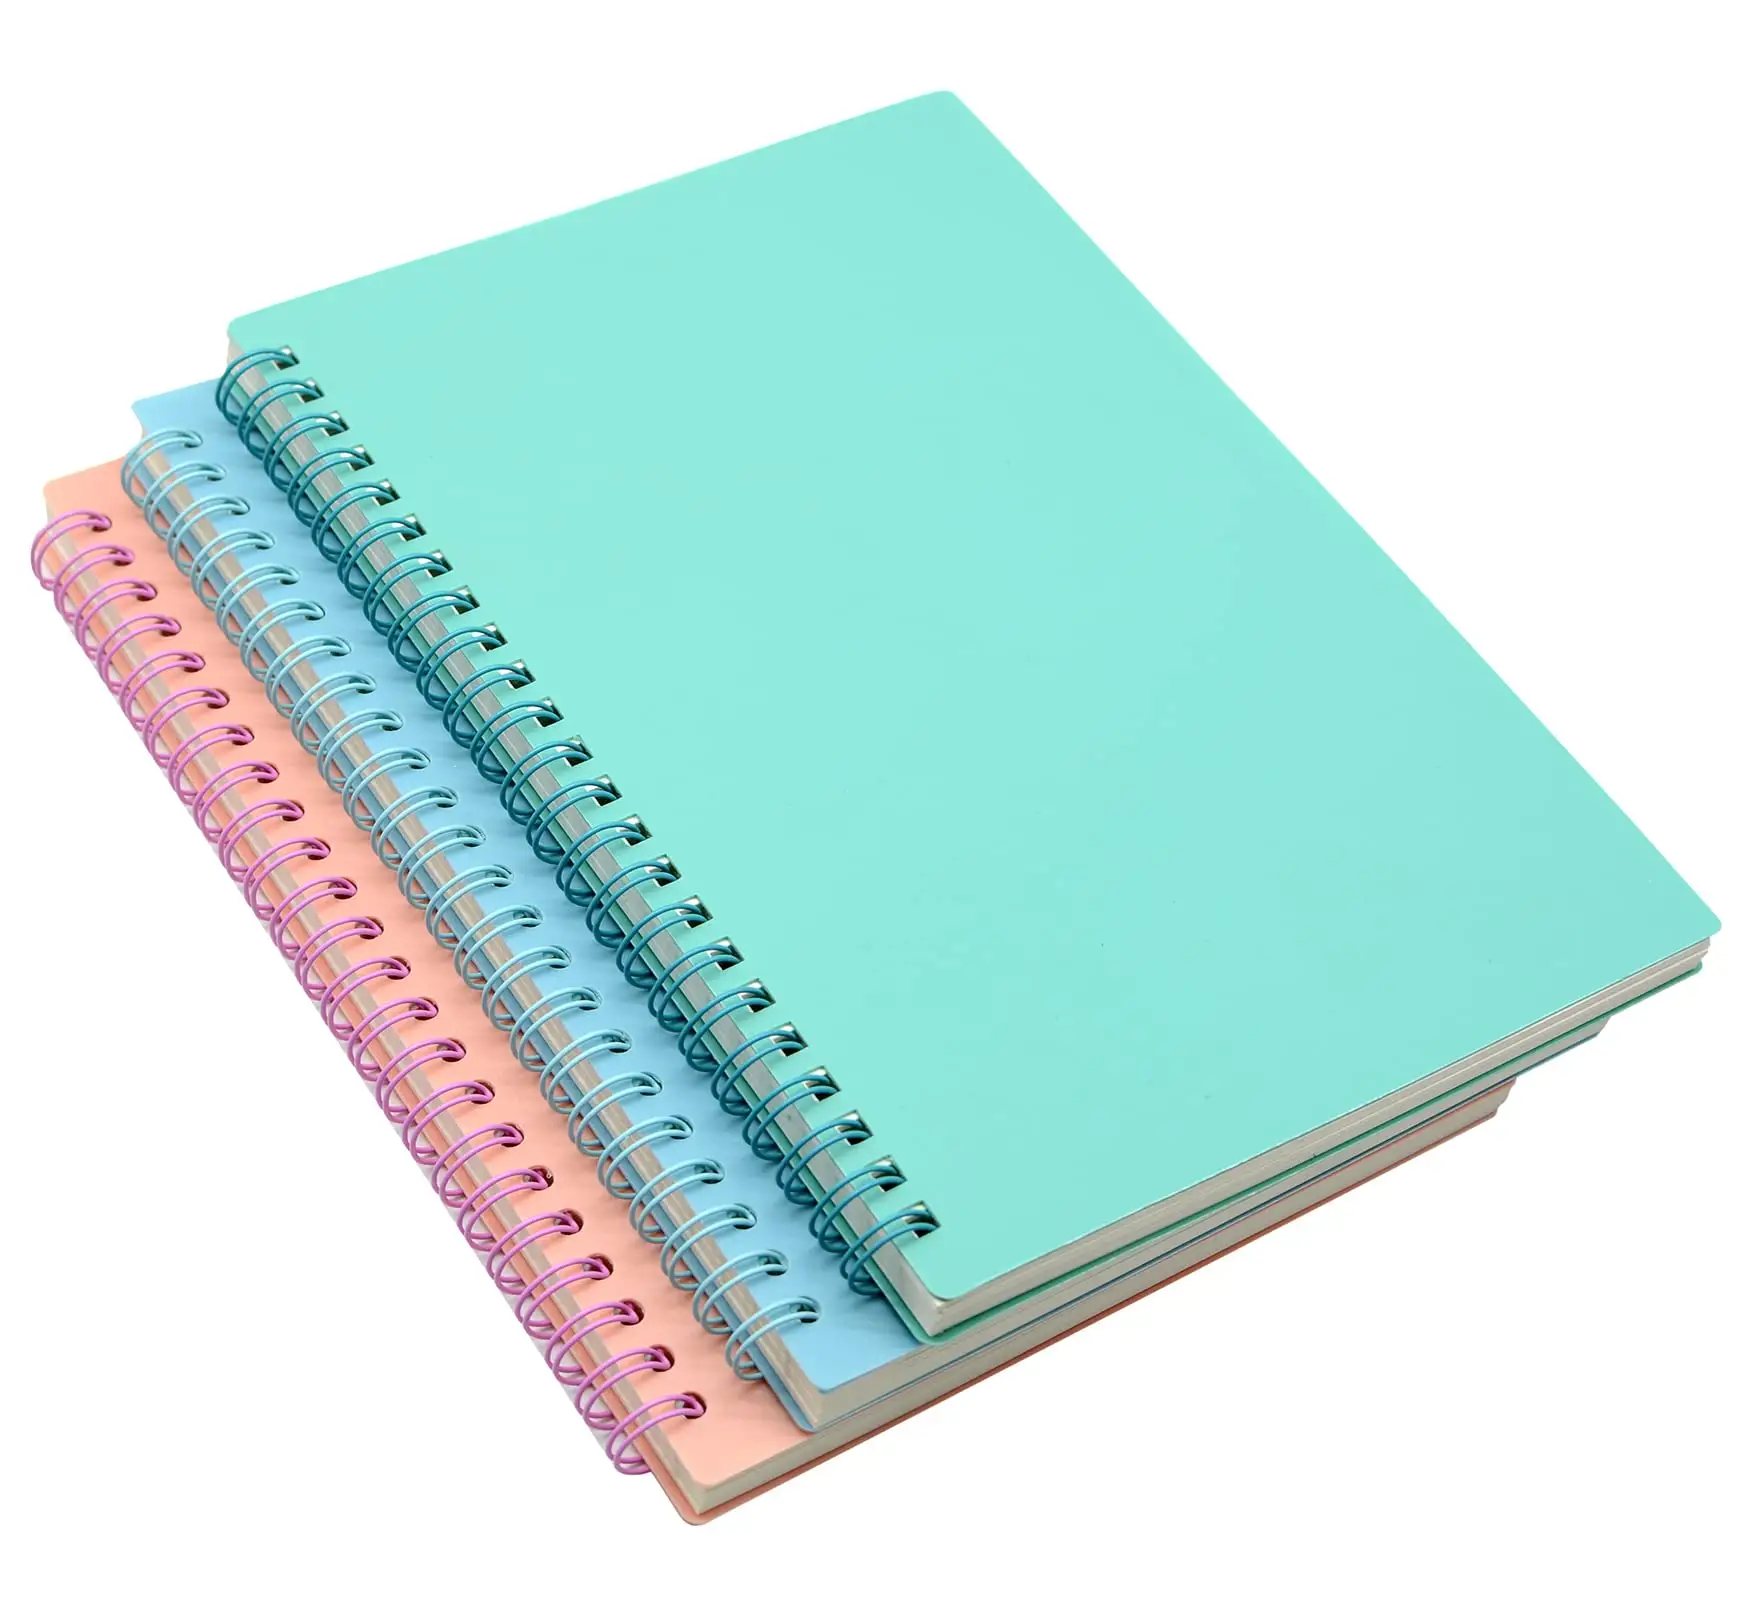 Custom print art paper hard cover spiral binding journal coil notebook A5 cheap